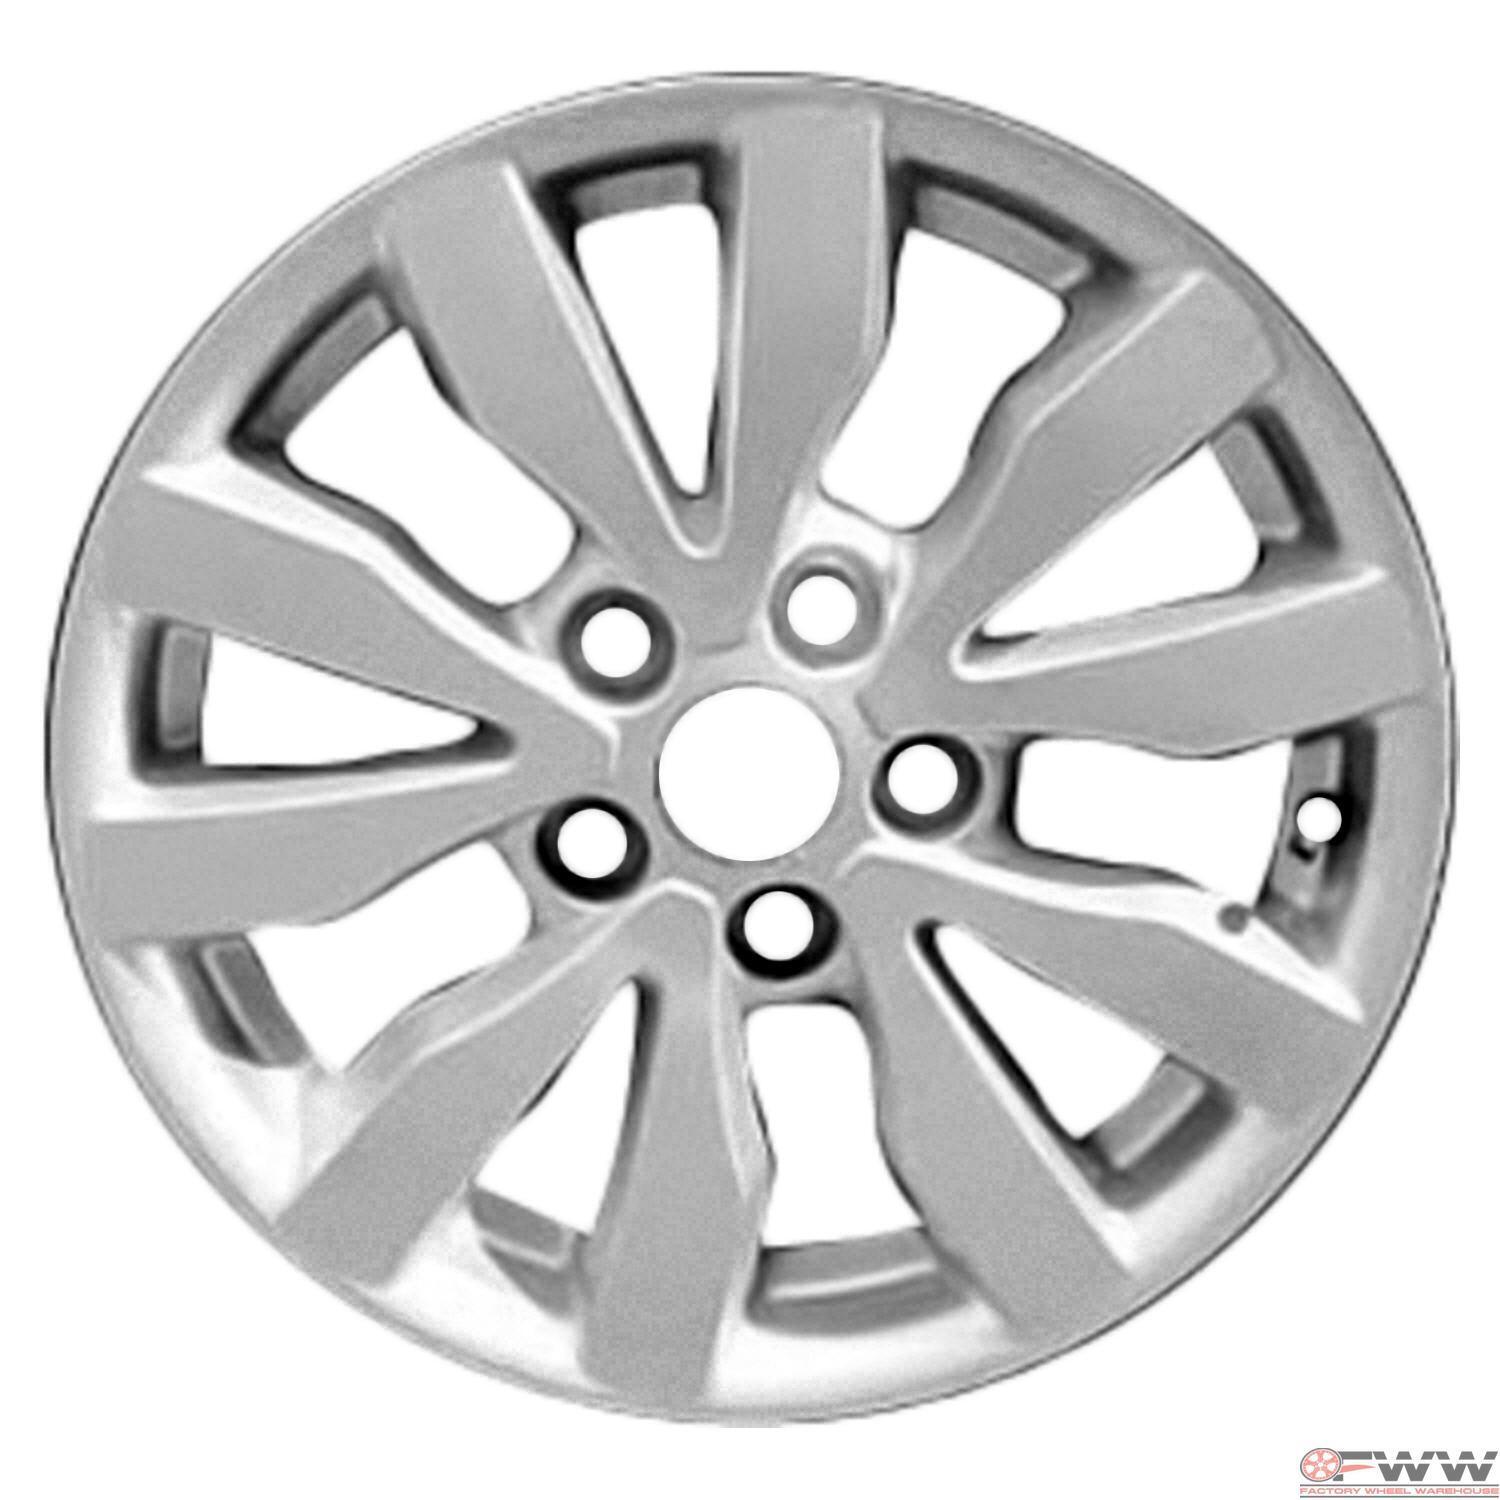 Kia Rondo Wheel 2009-2013 16